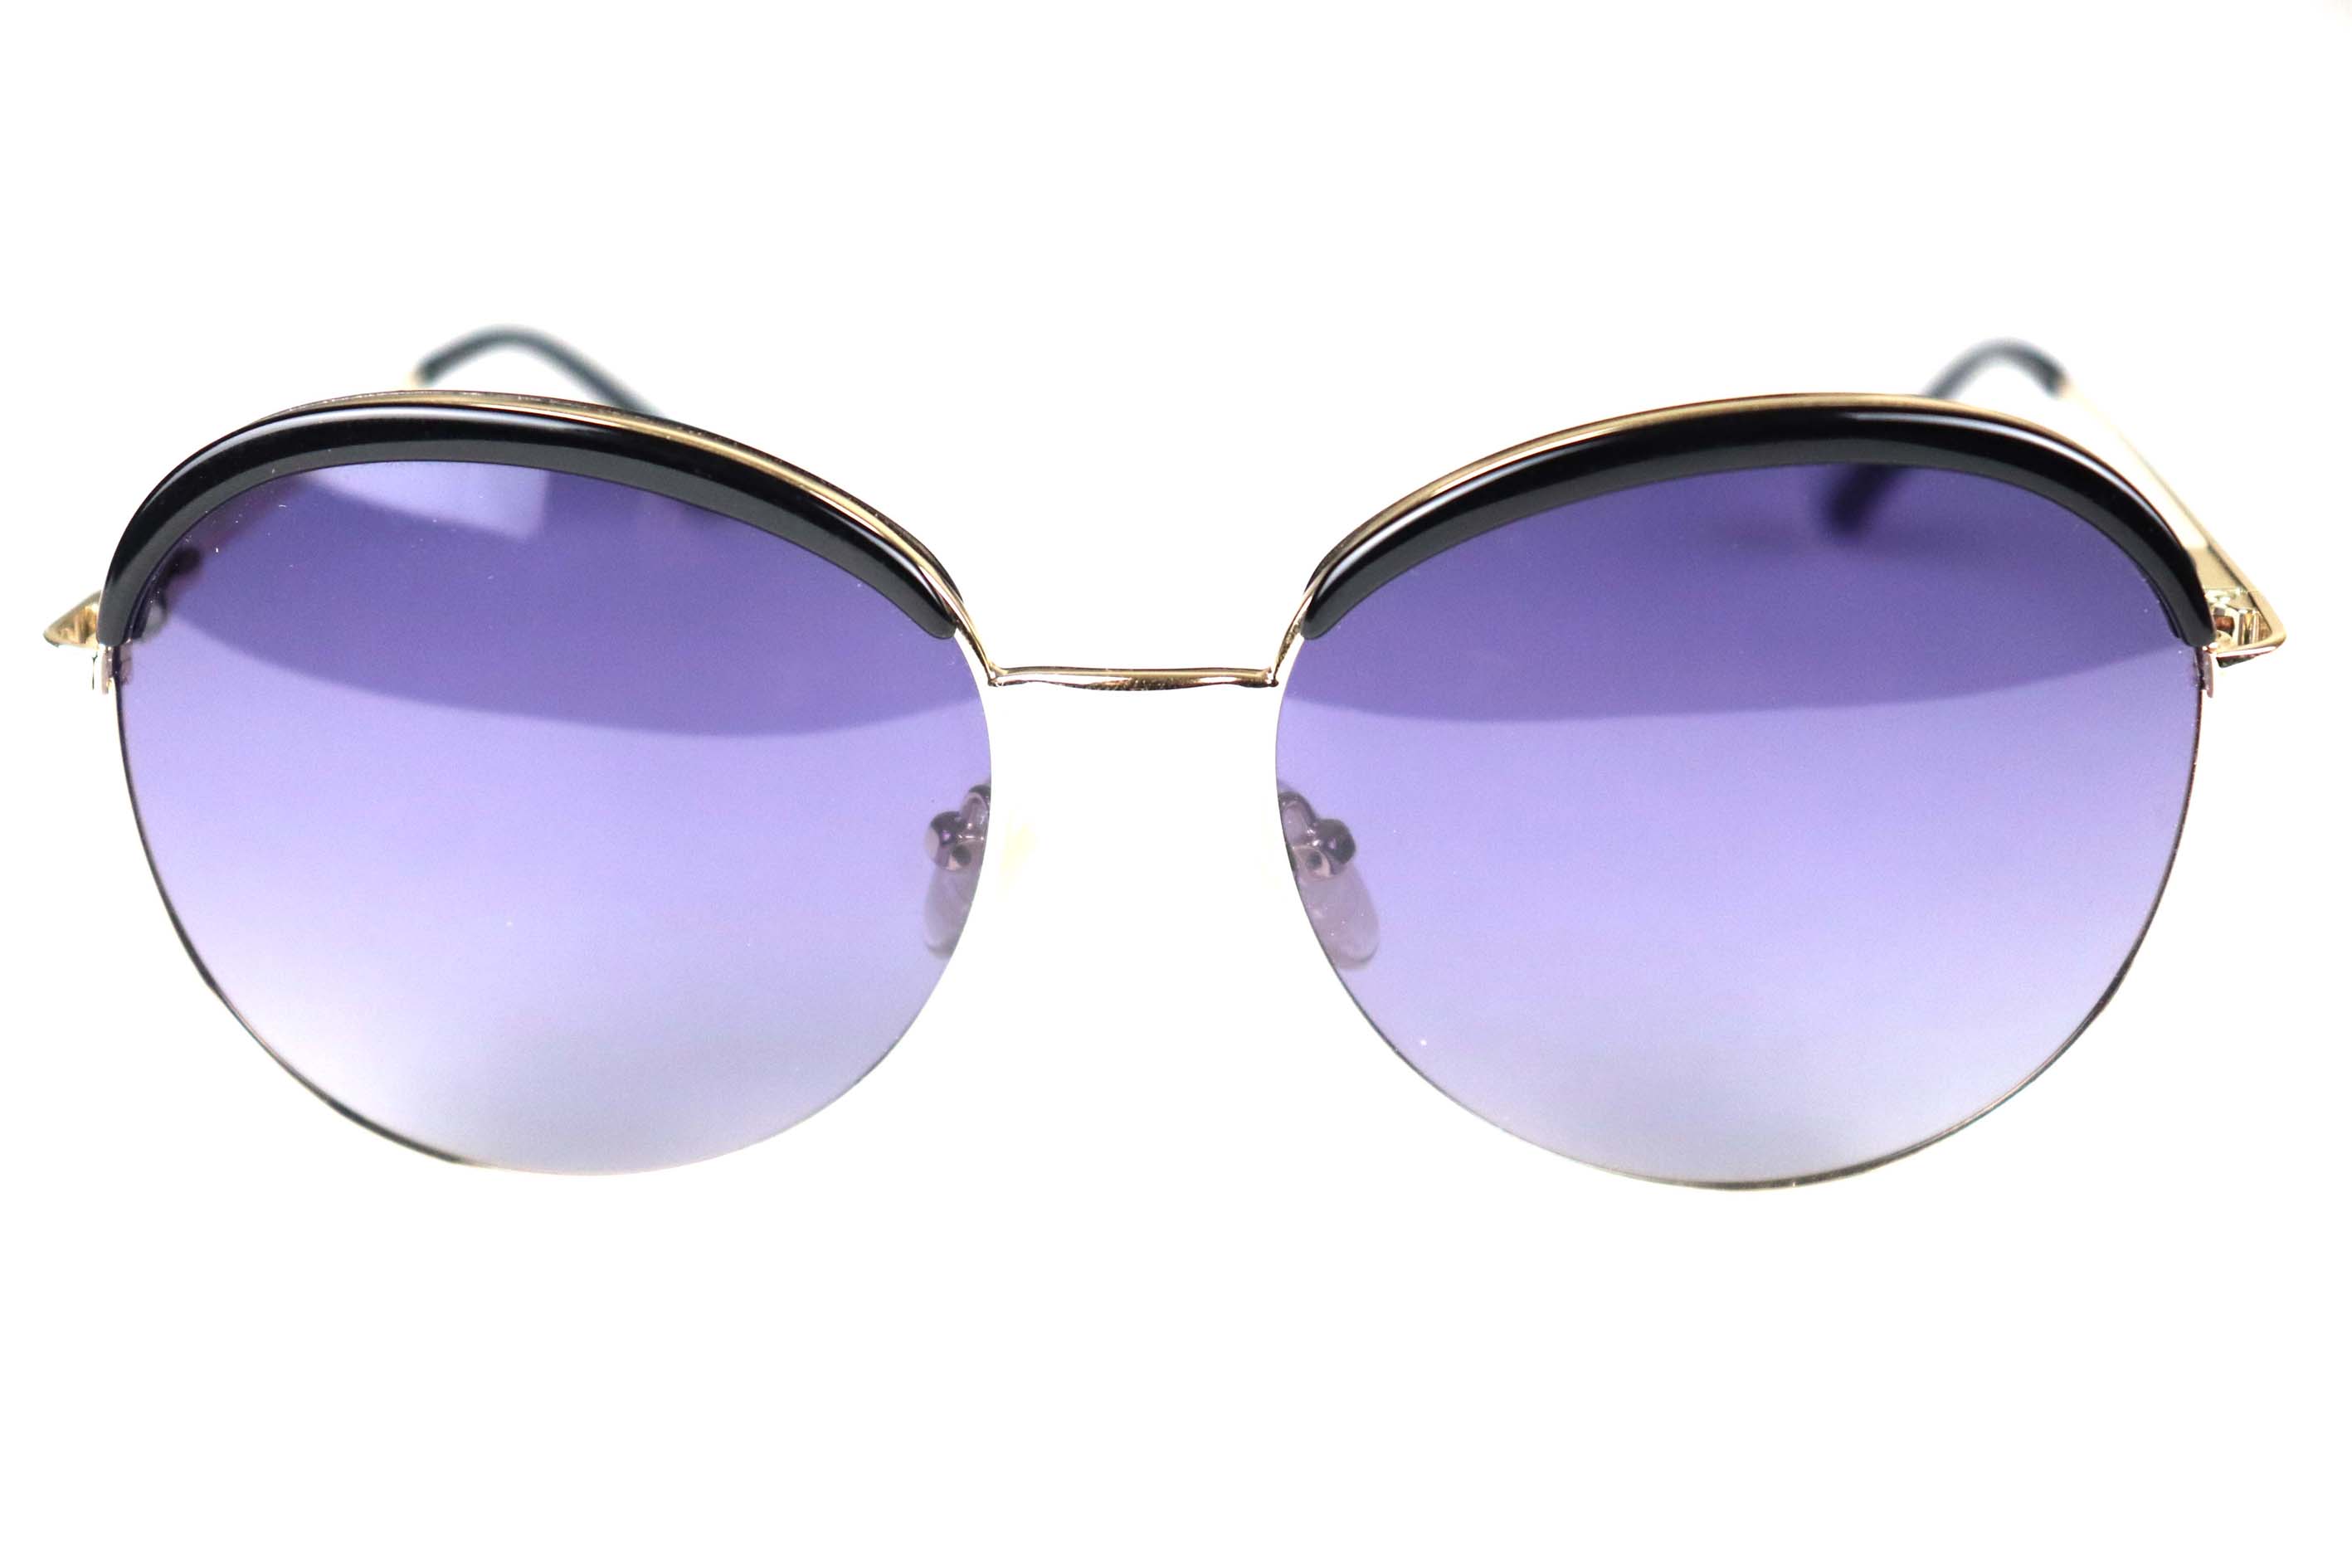 Mackwezard Sunglasses -5097-C1-56-17-140